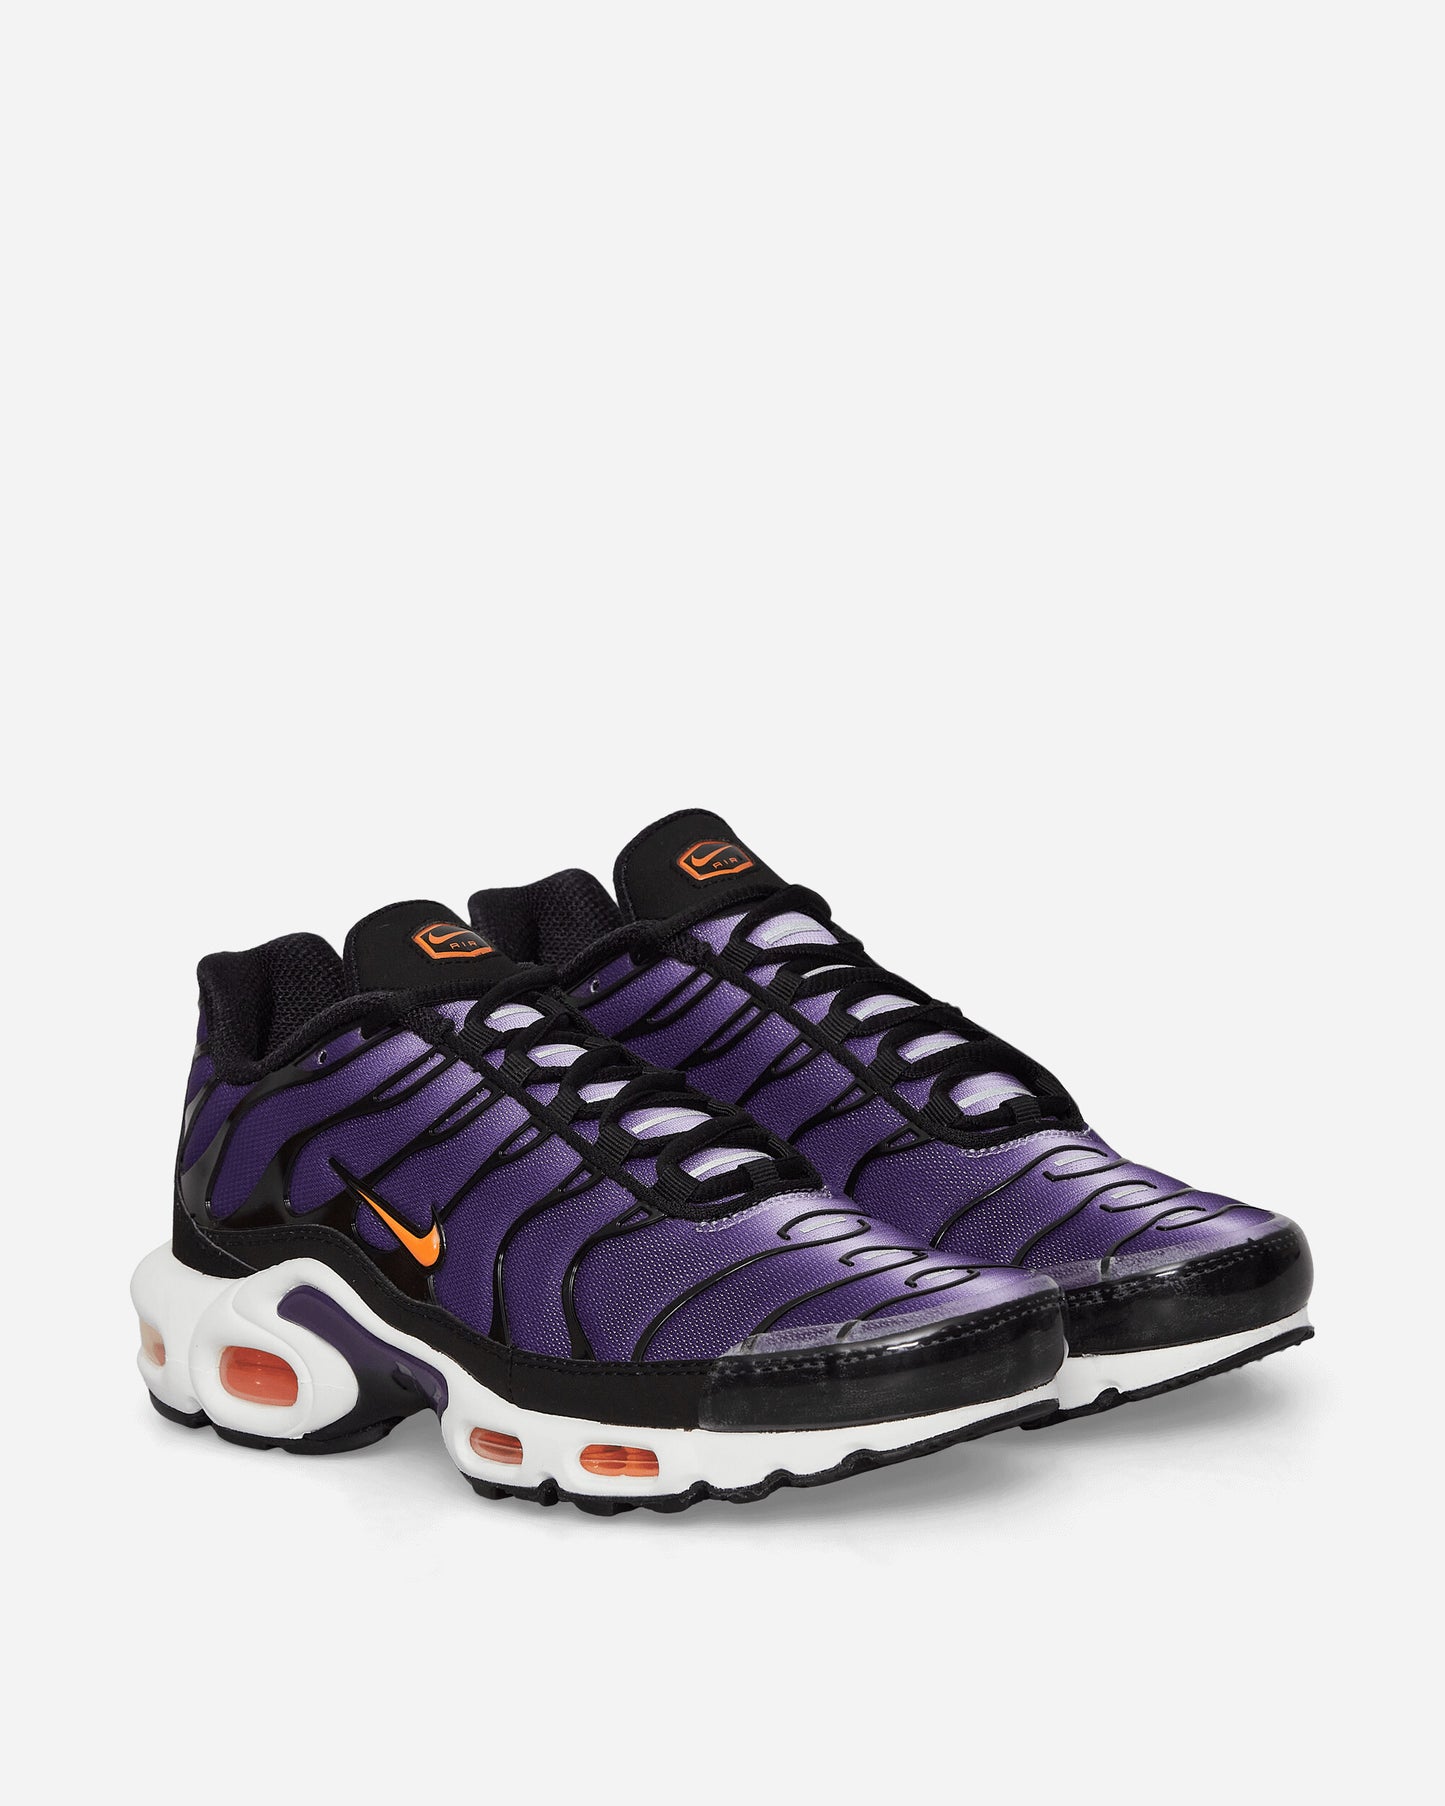 Nike Nike Air Max Plus Og Voltage Purple/Orange Sneakers Low DX0755-500